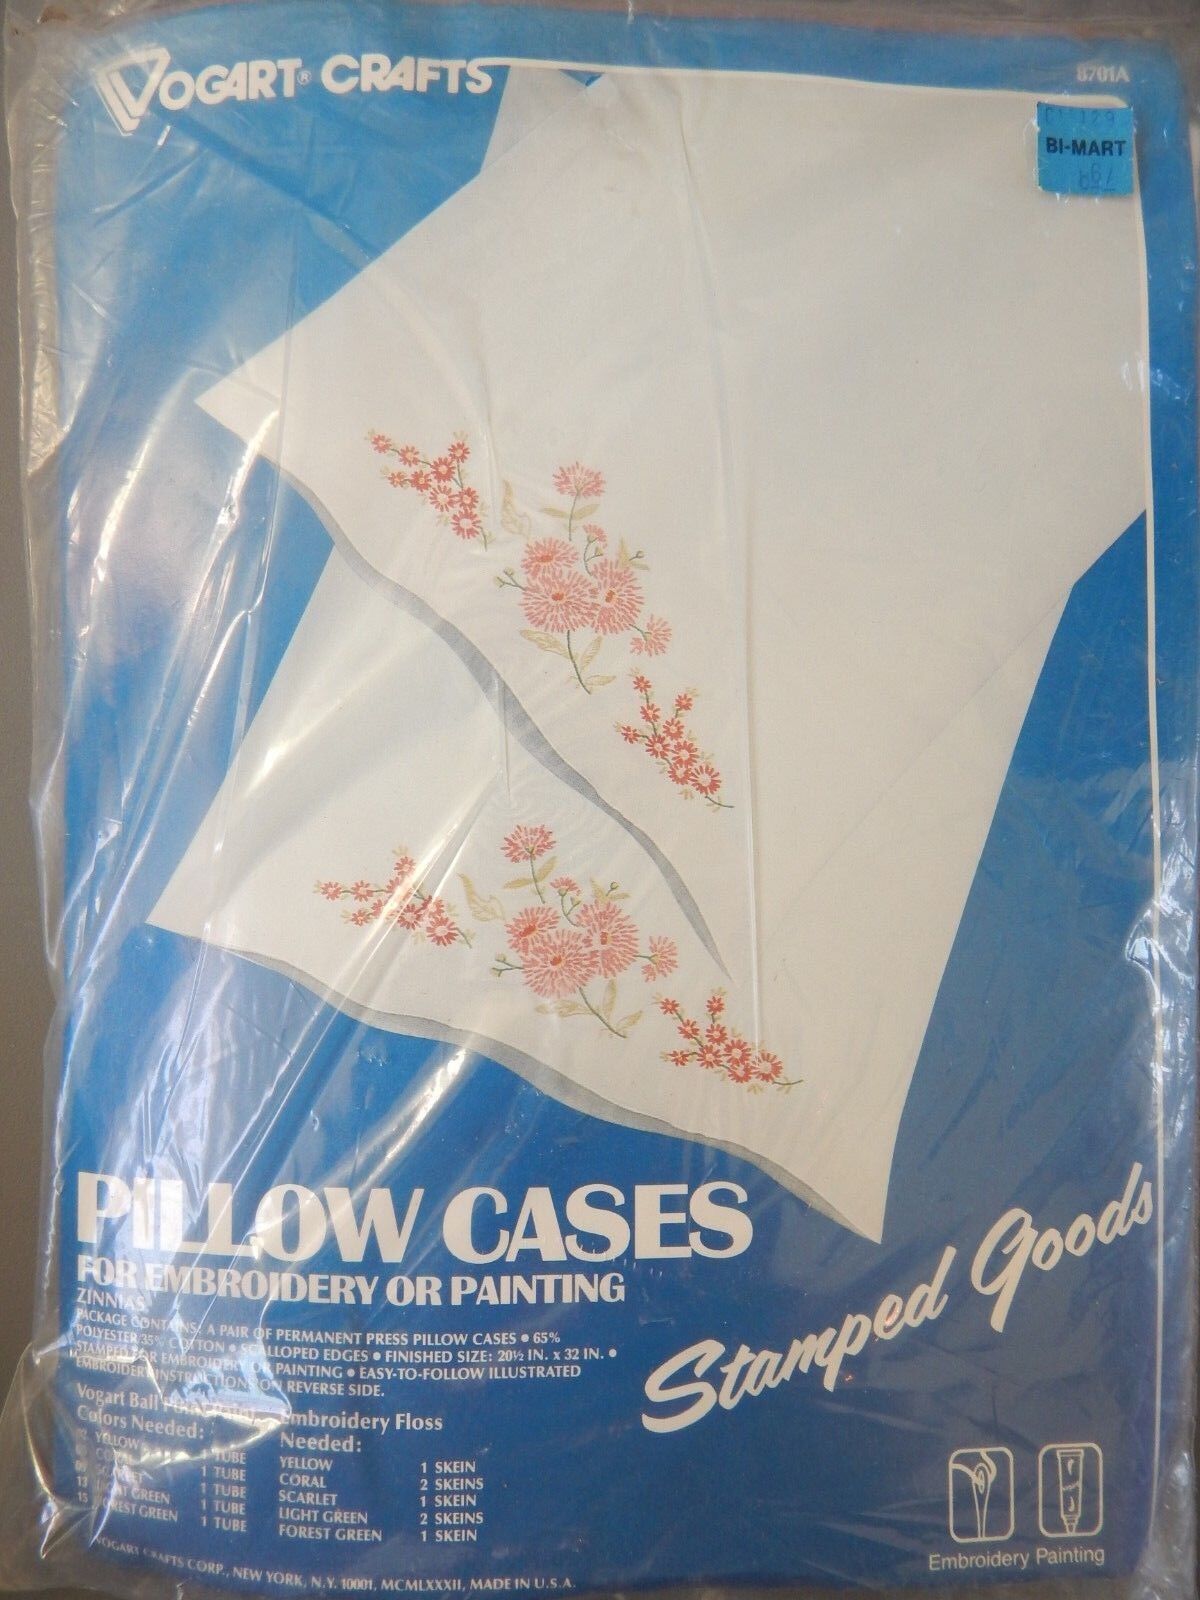 VTG New Vogart Crafts Pillow Cases 